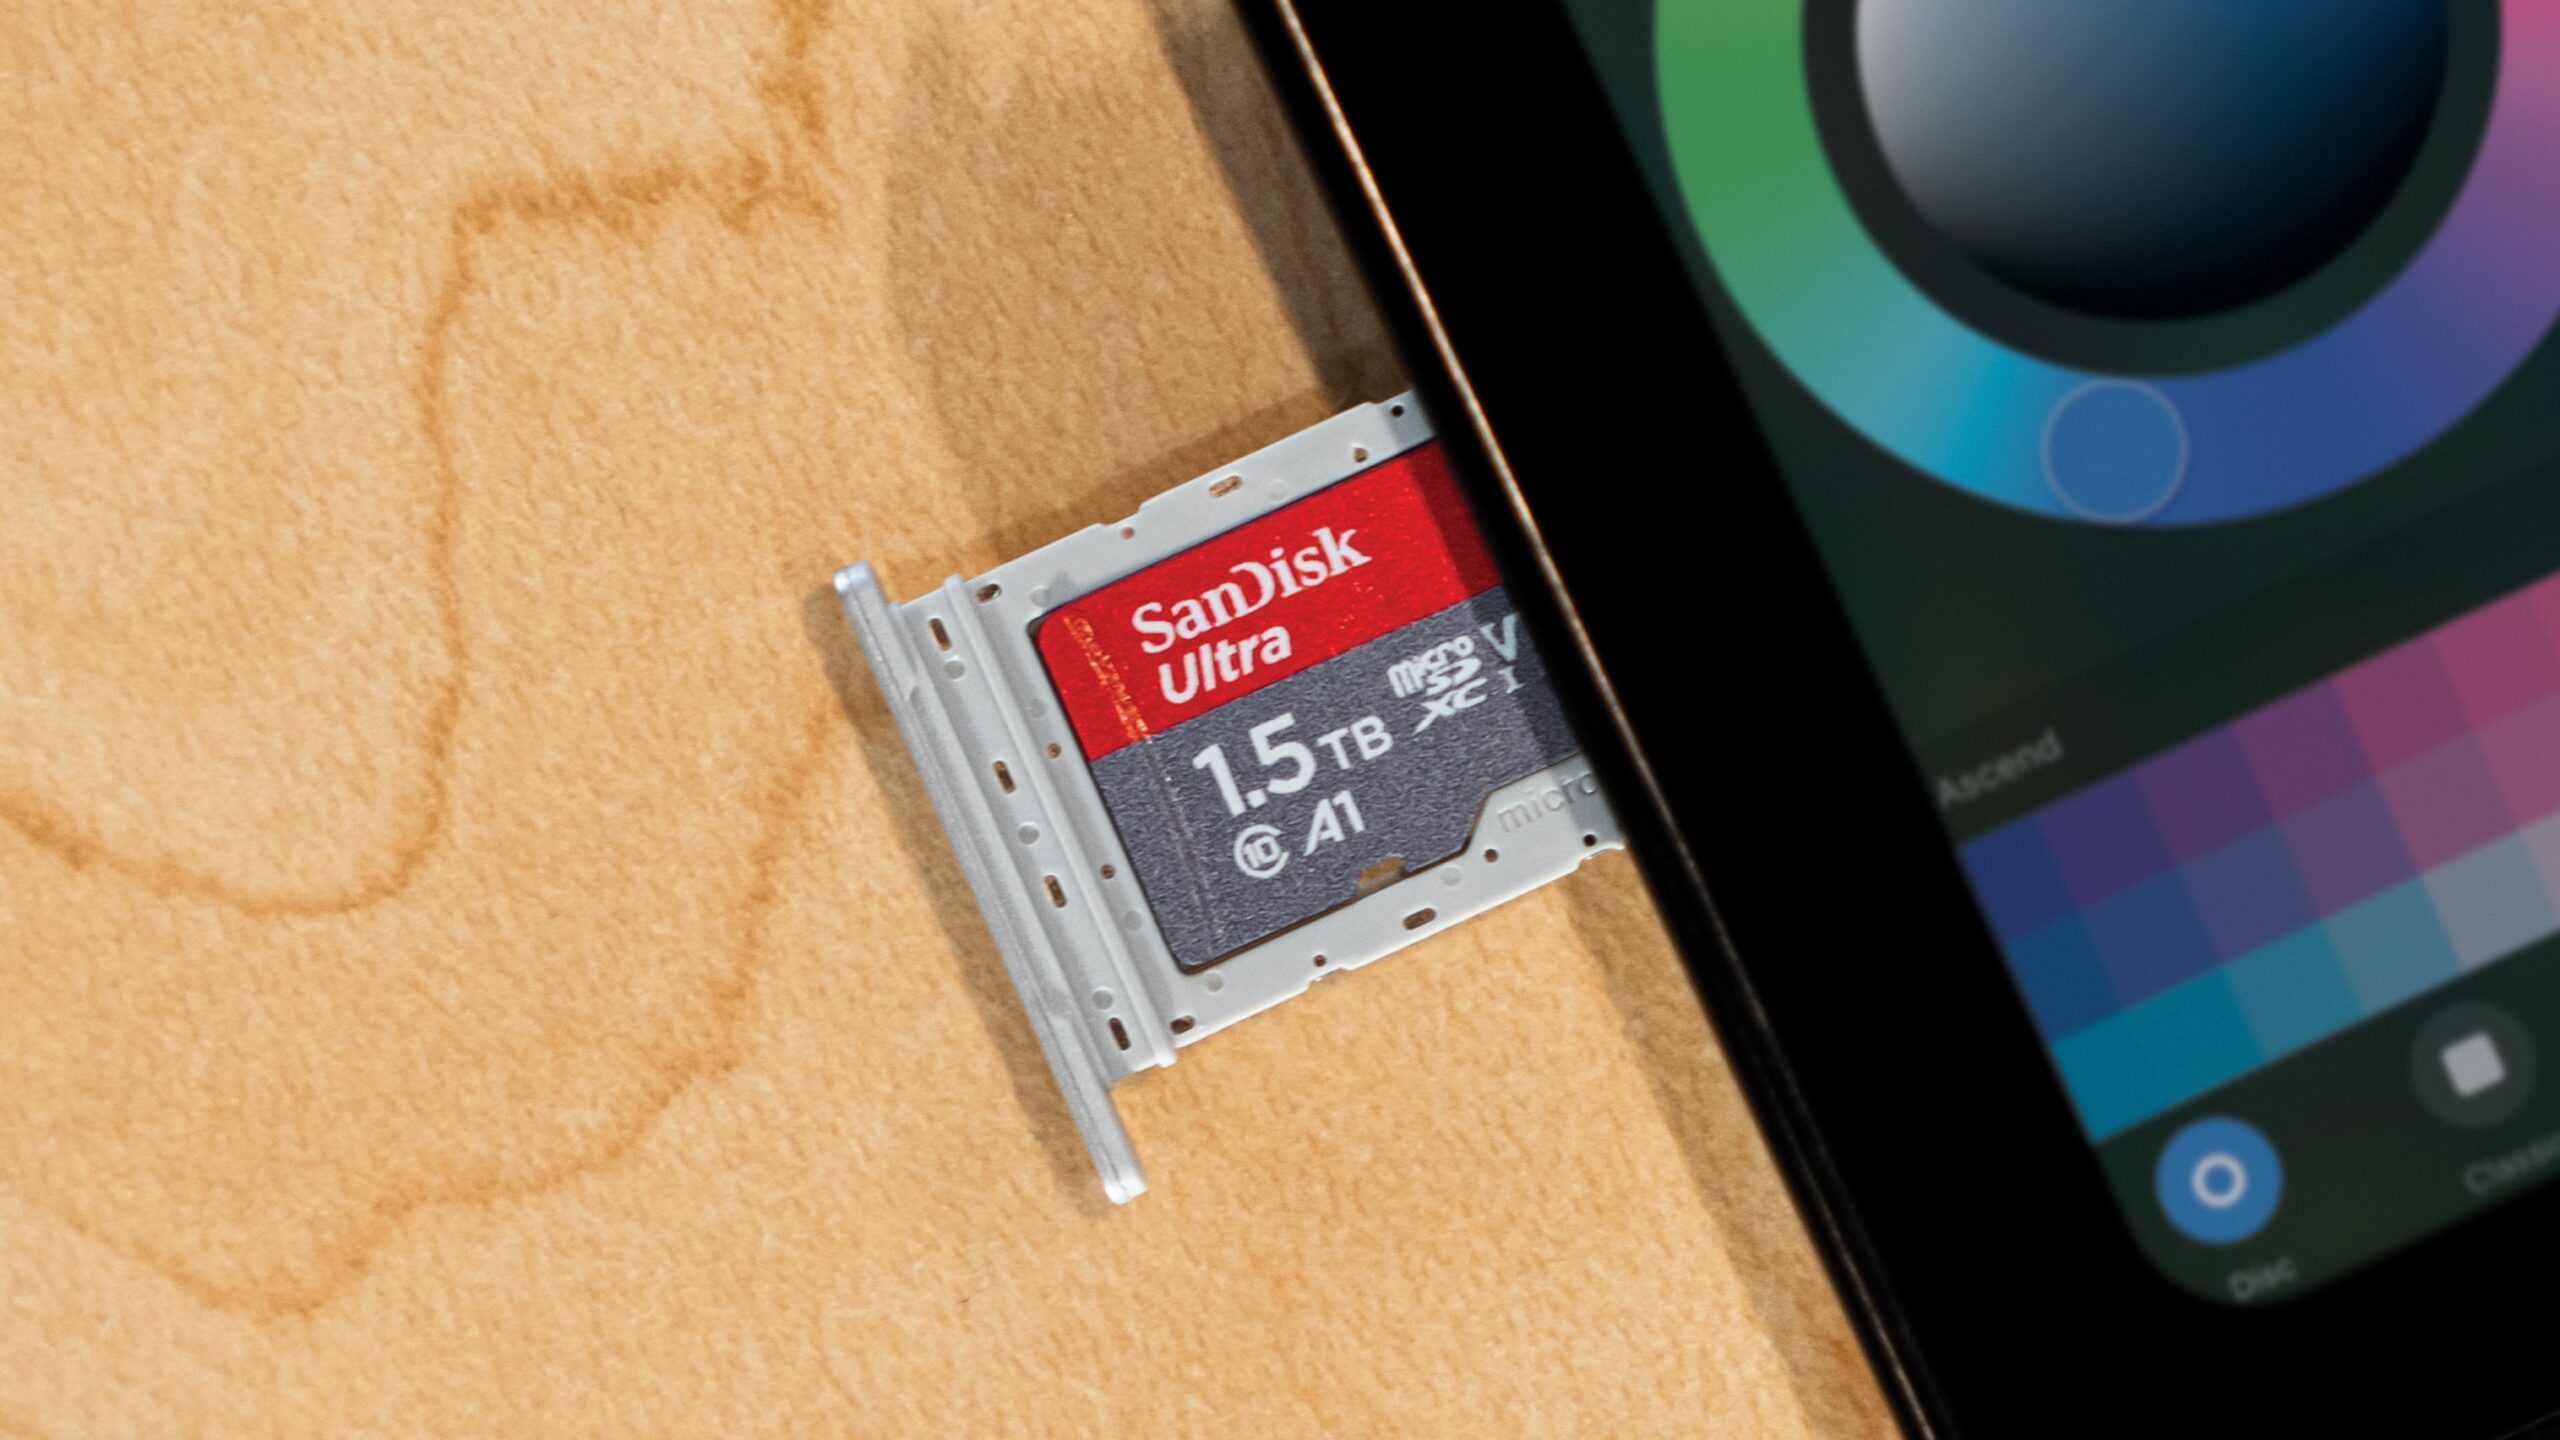 Western Digital SanDisk Ultra microSD Karte 1,5 TB in Tablet